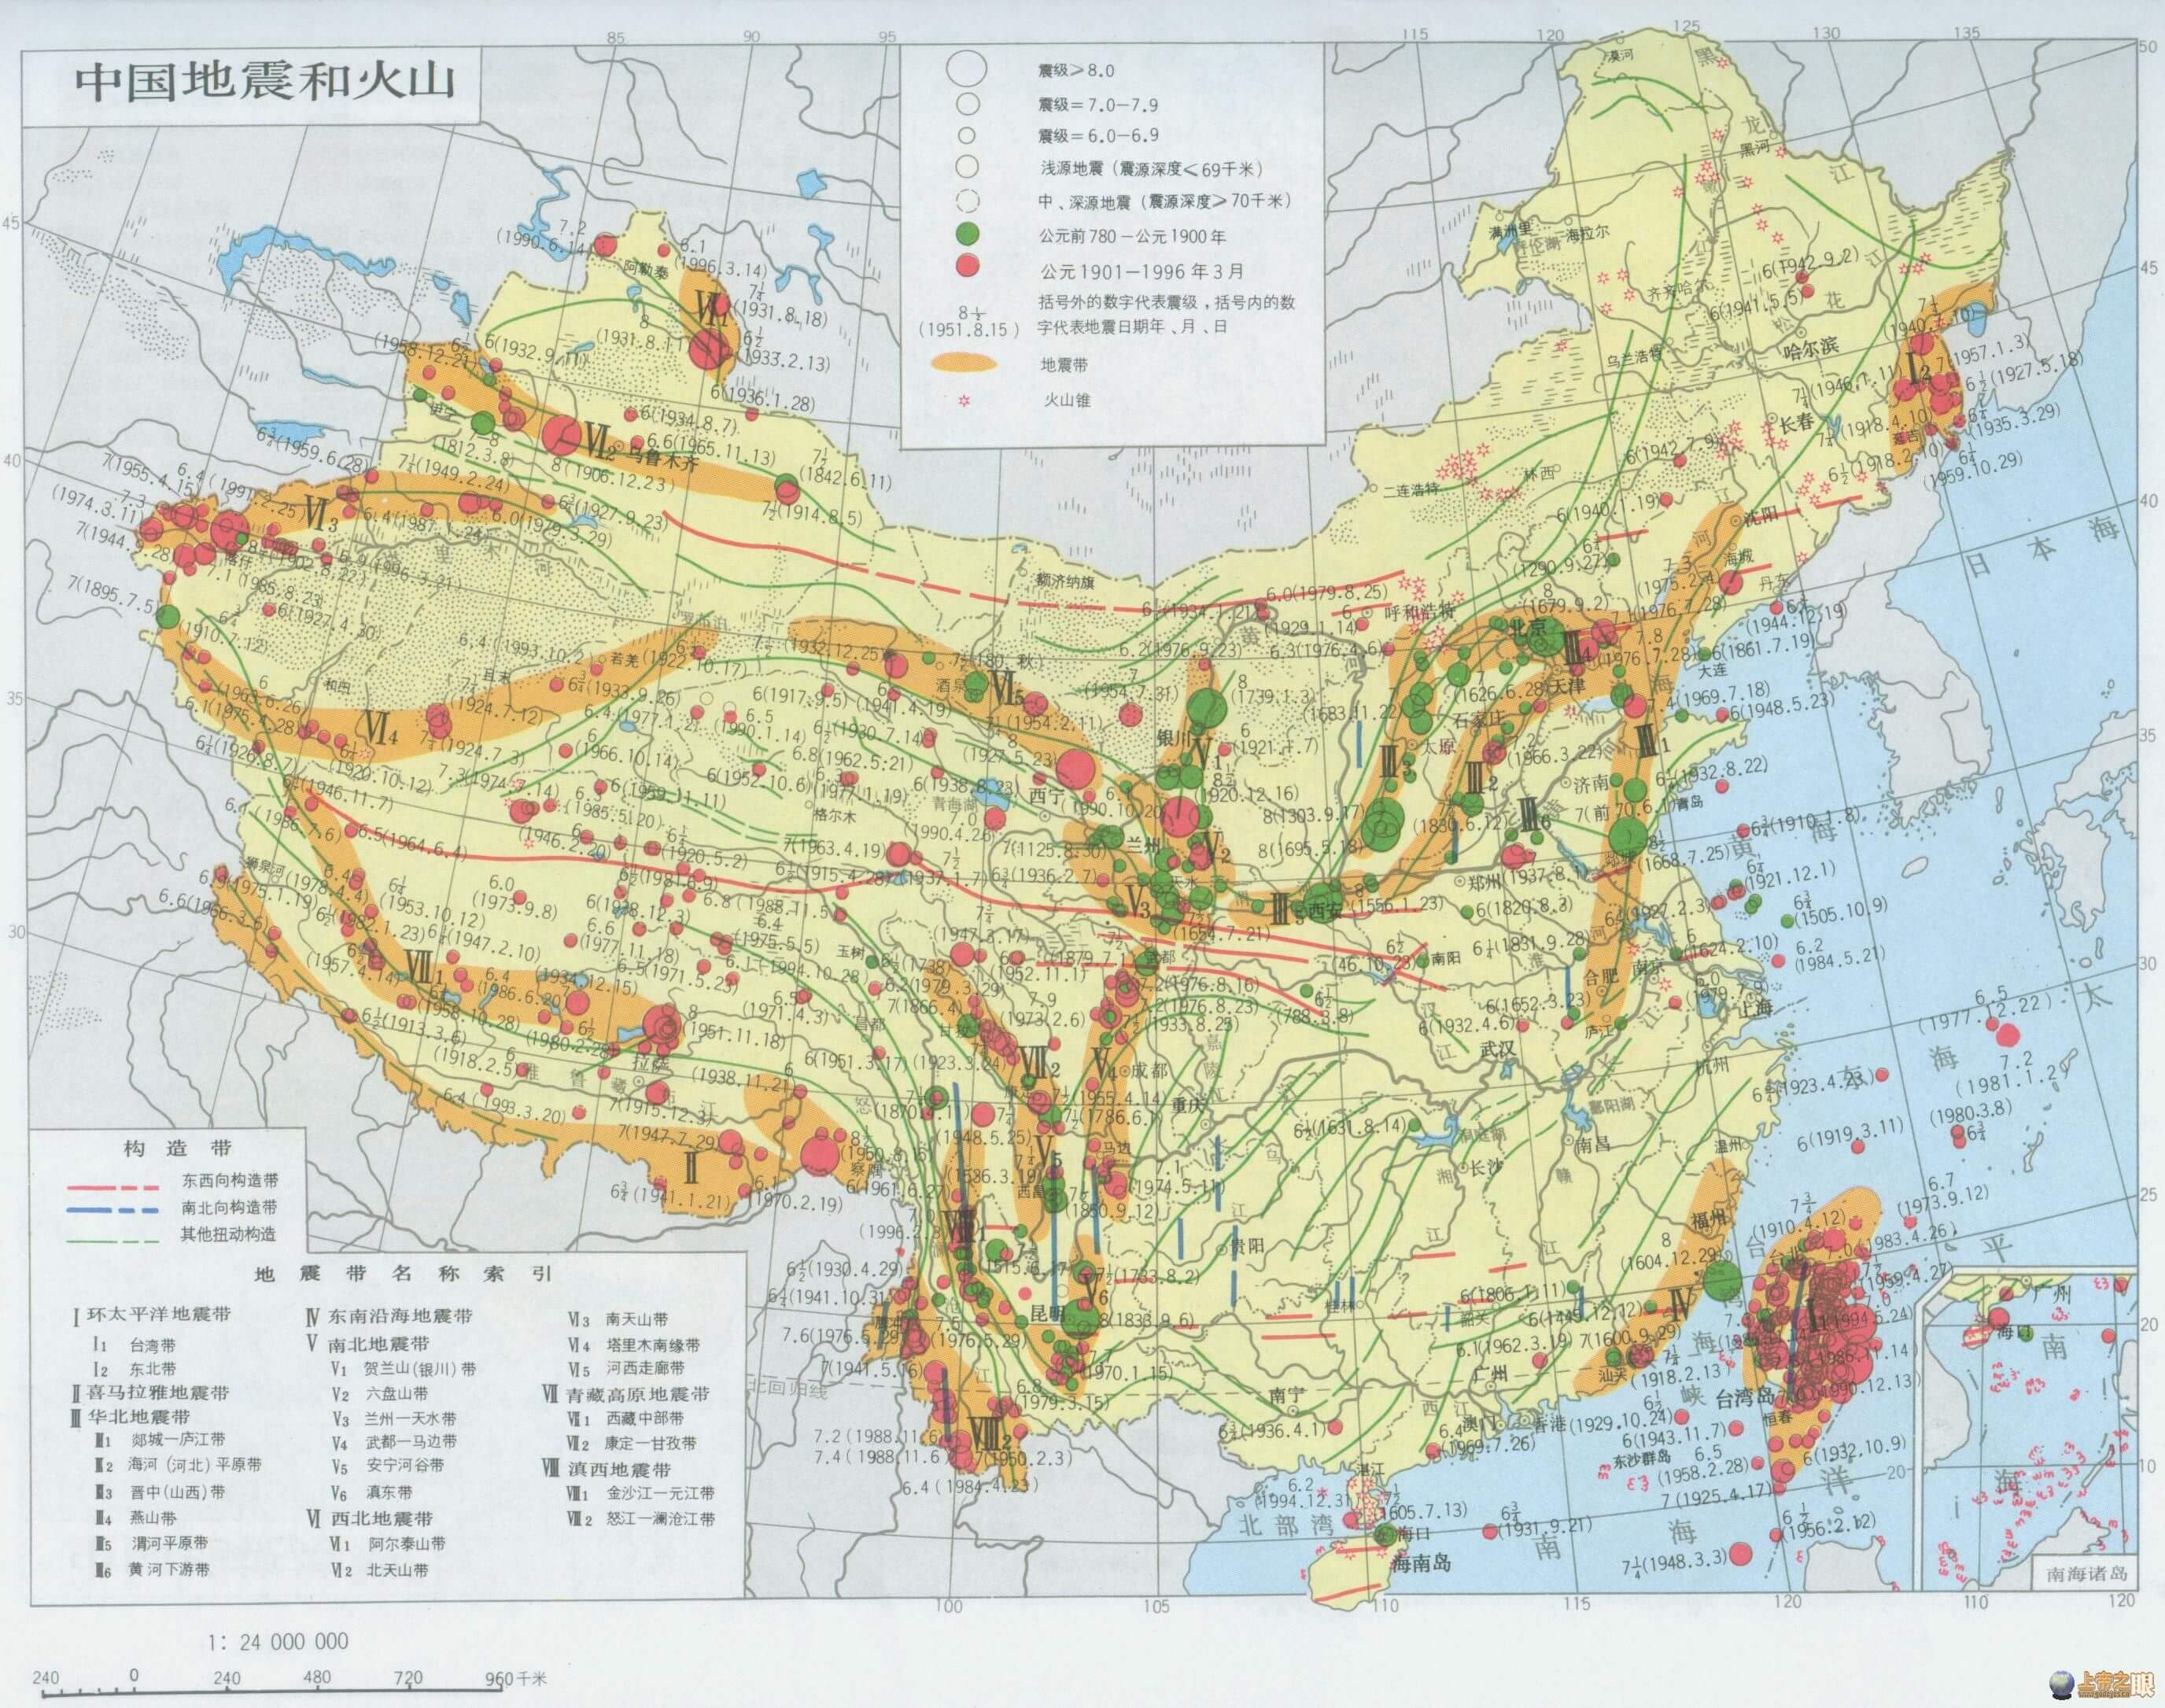 China Erdequakes Map